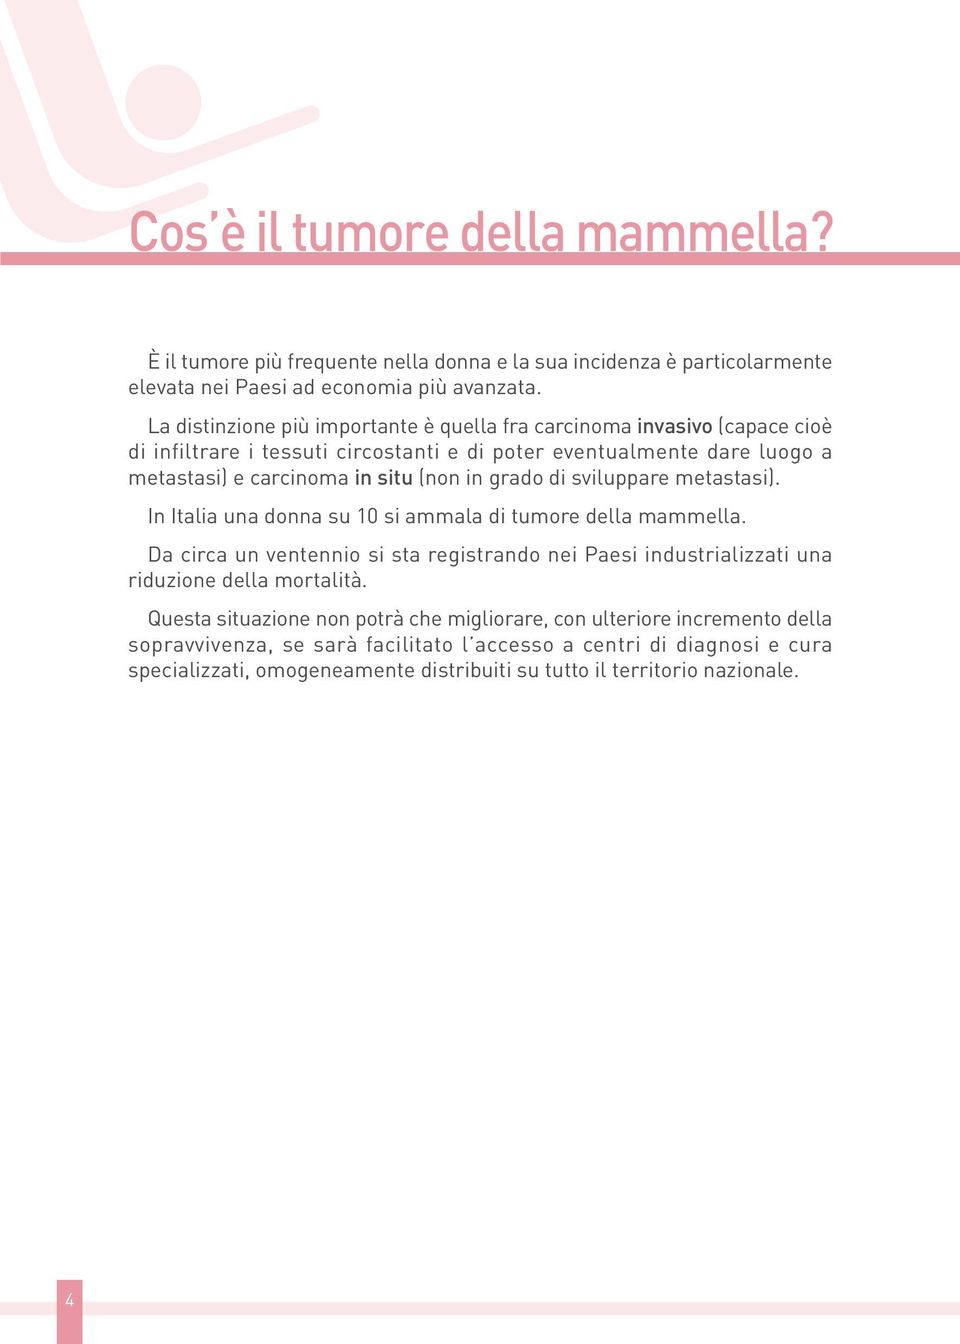 grado di sviluppare metastasi). In Italia una donna su 10 si ammala di tumore della mammella.